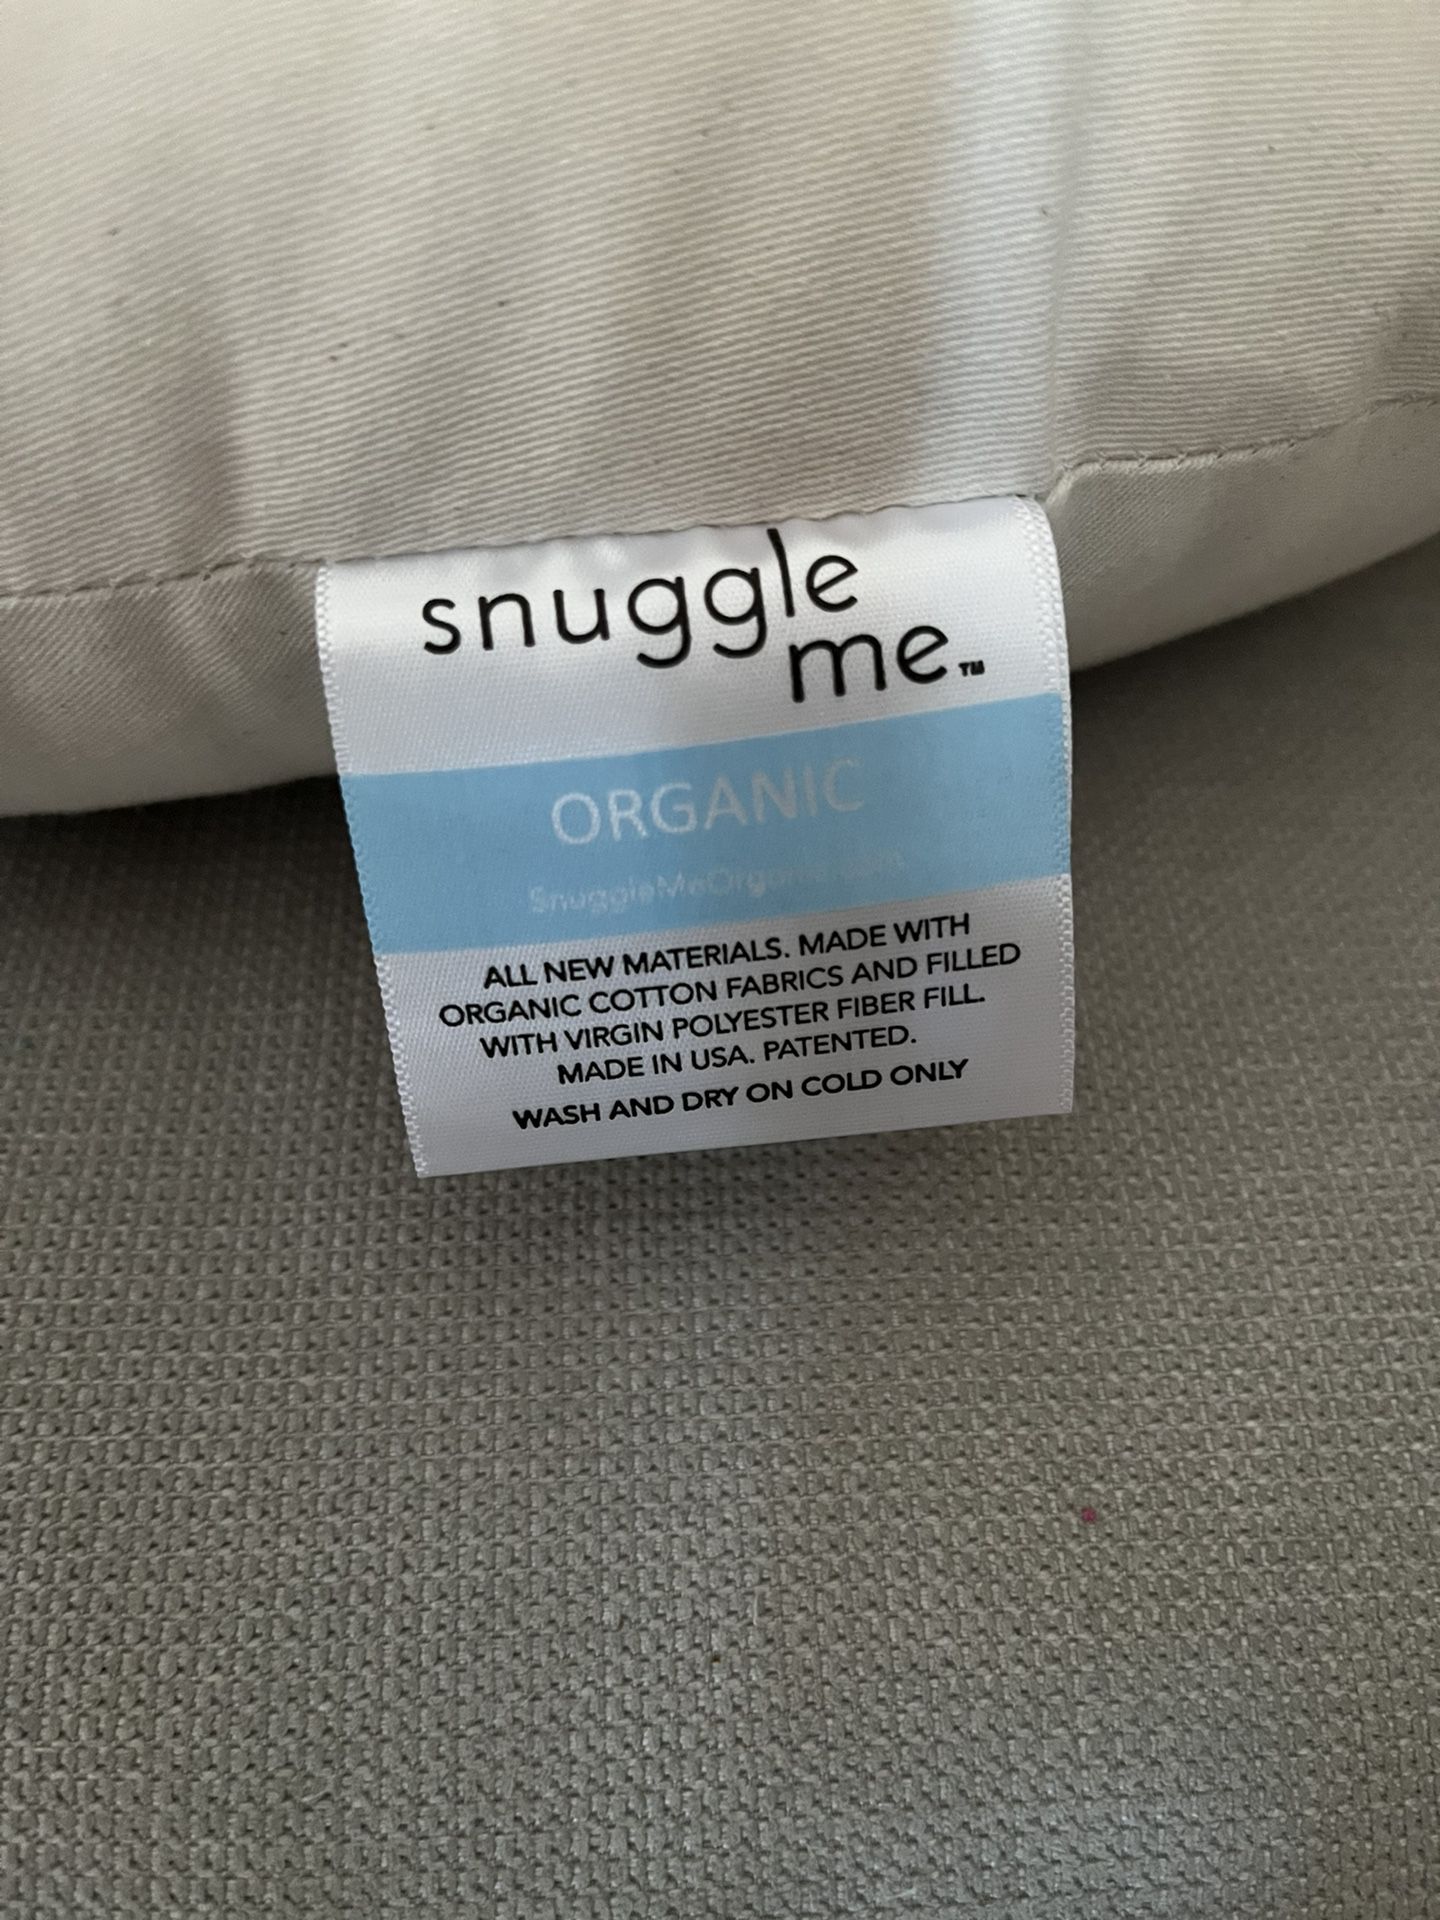 Snuggle Me Organic